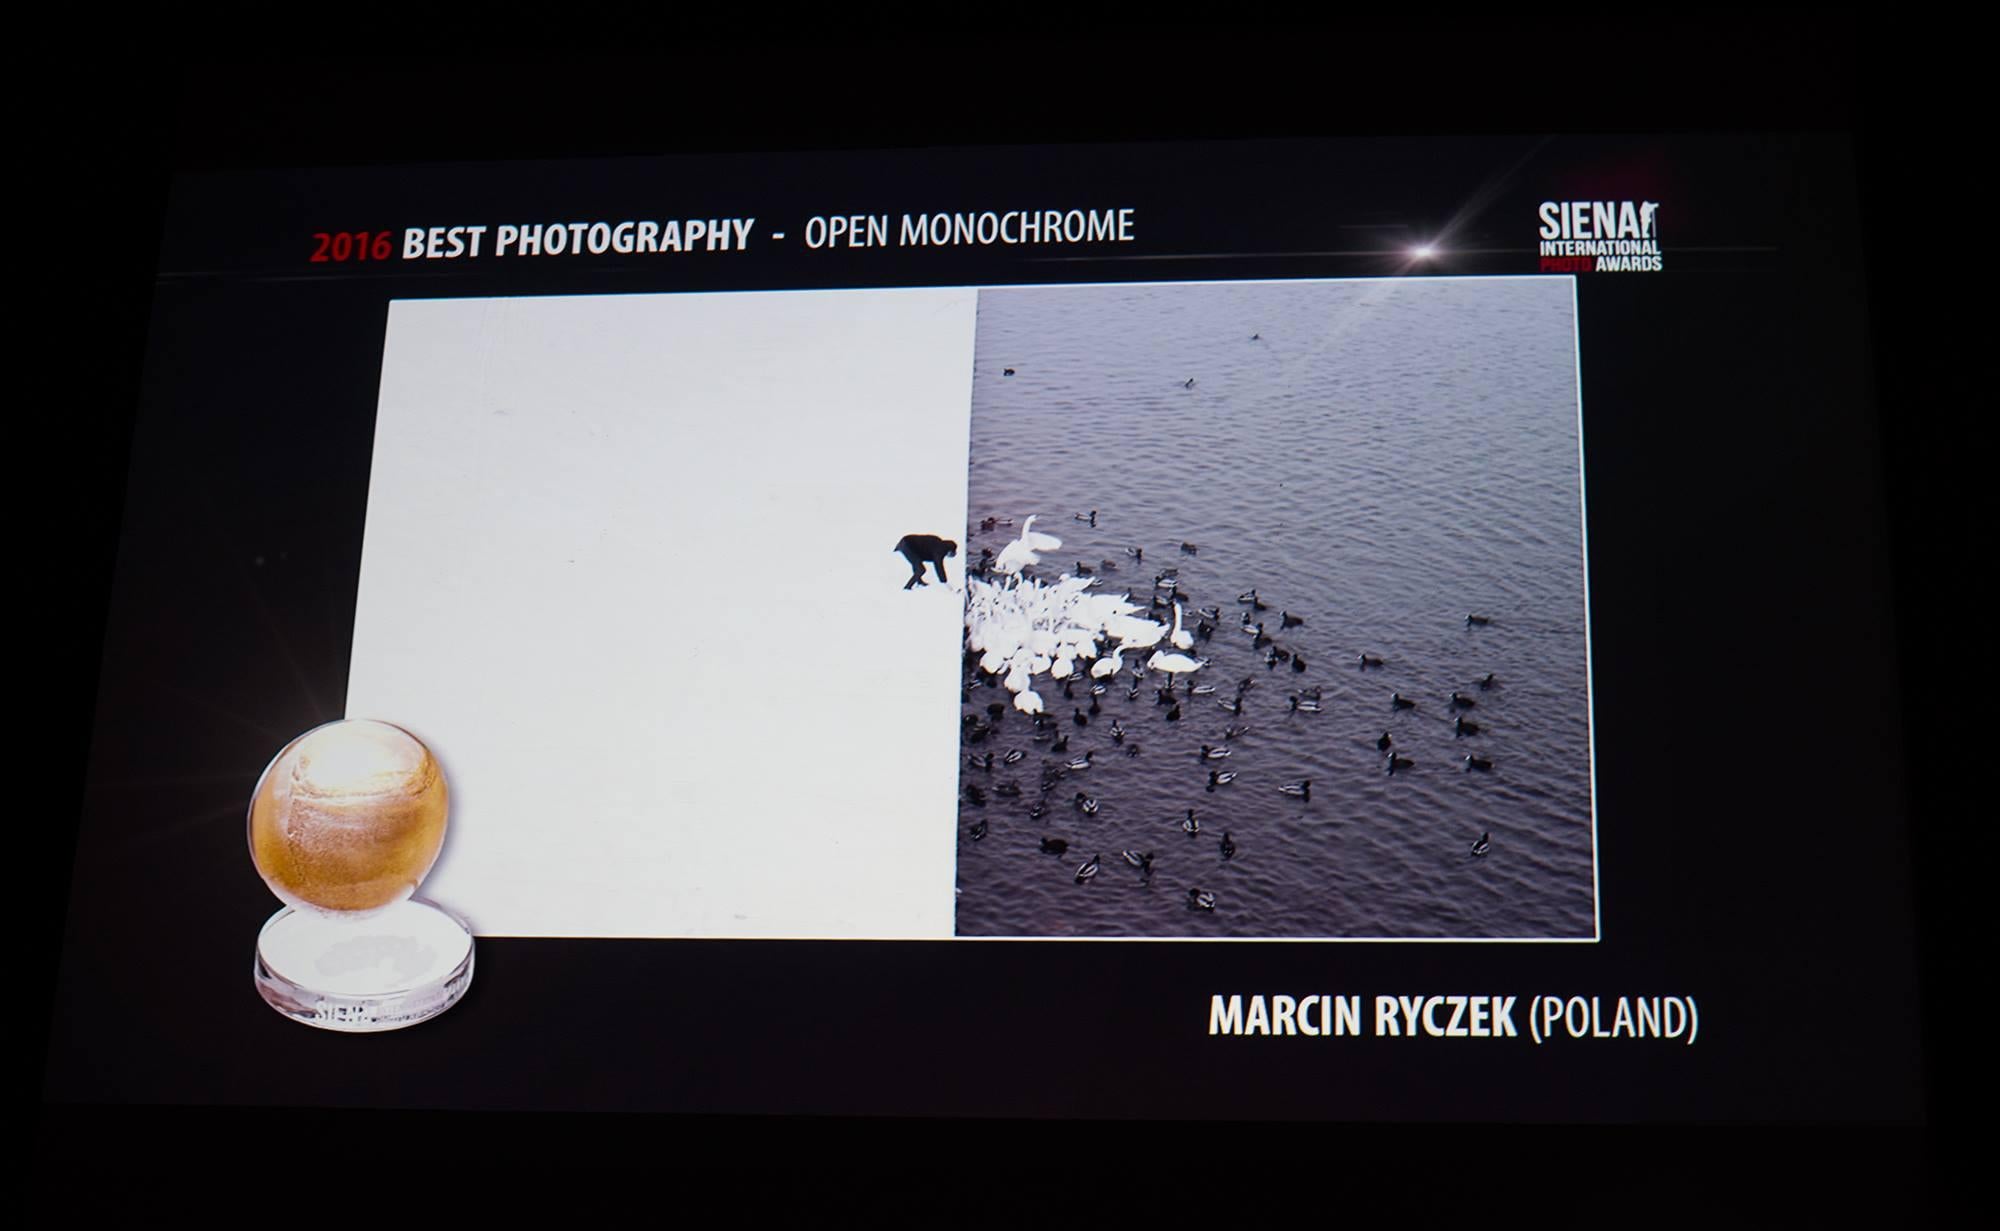 Das Foto ist auf der Vorderseite von Marcin Ryczek signiert und gestempelt und wird ungerahmt verschickt

Marcin Ryczek erhielt diese Auszeichnungen für dieses berühmte Foto:

- Großer Preis des NYPH New York Photo Festival 2015
- Das Miami